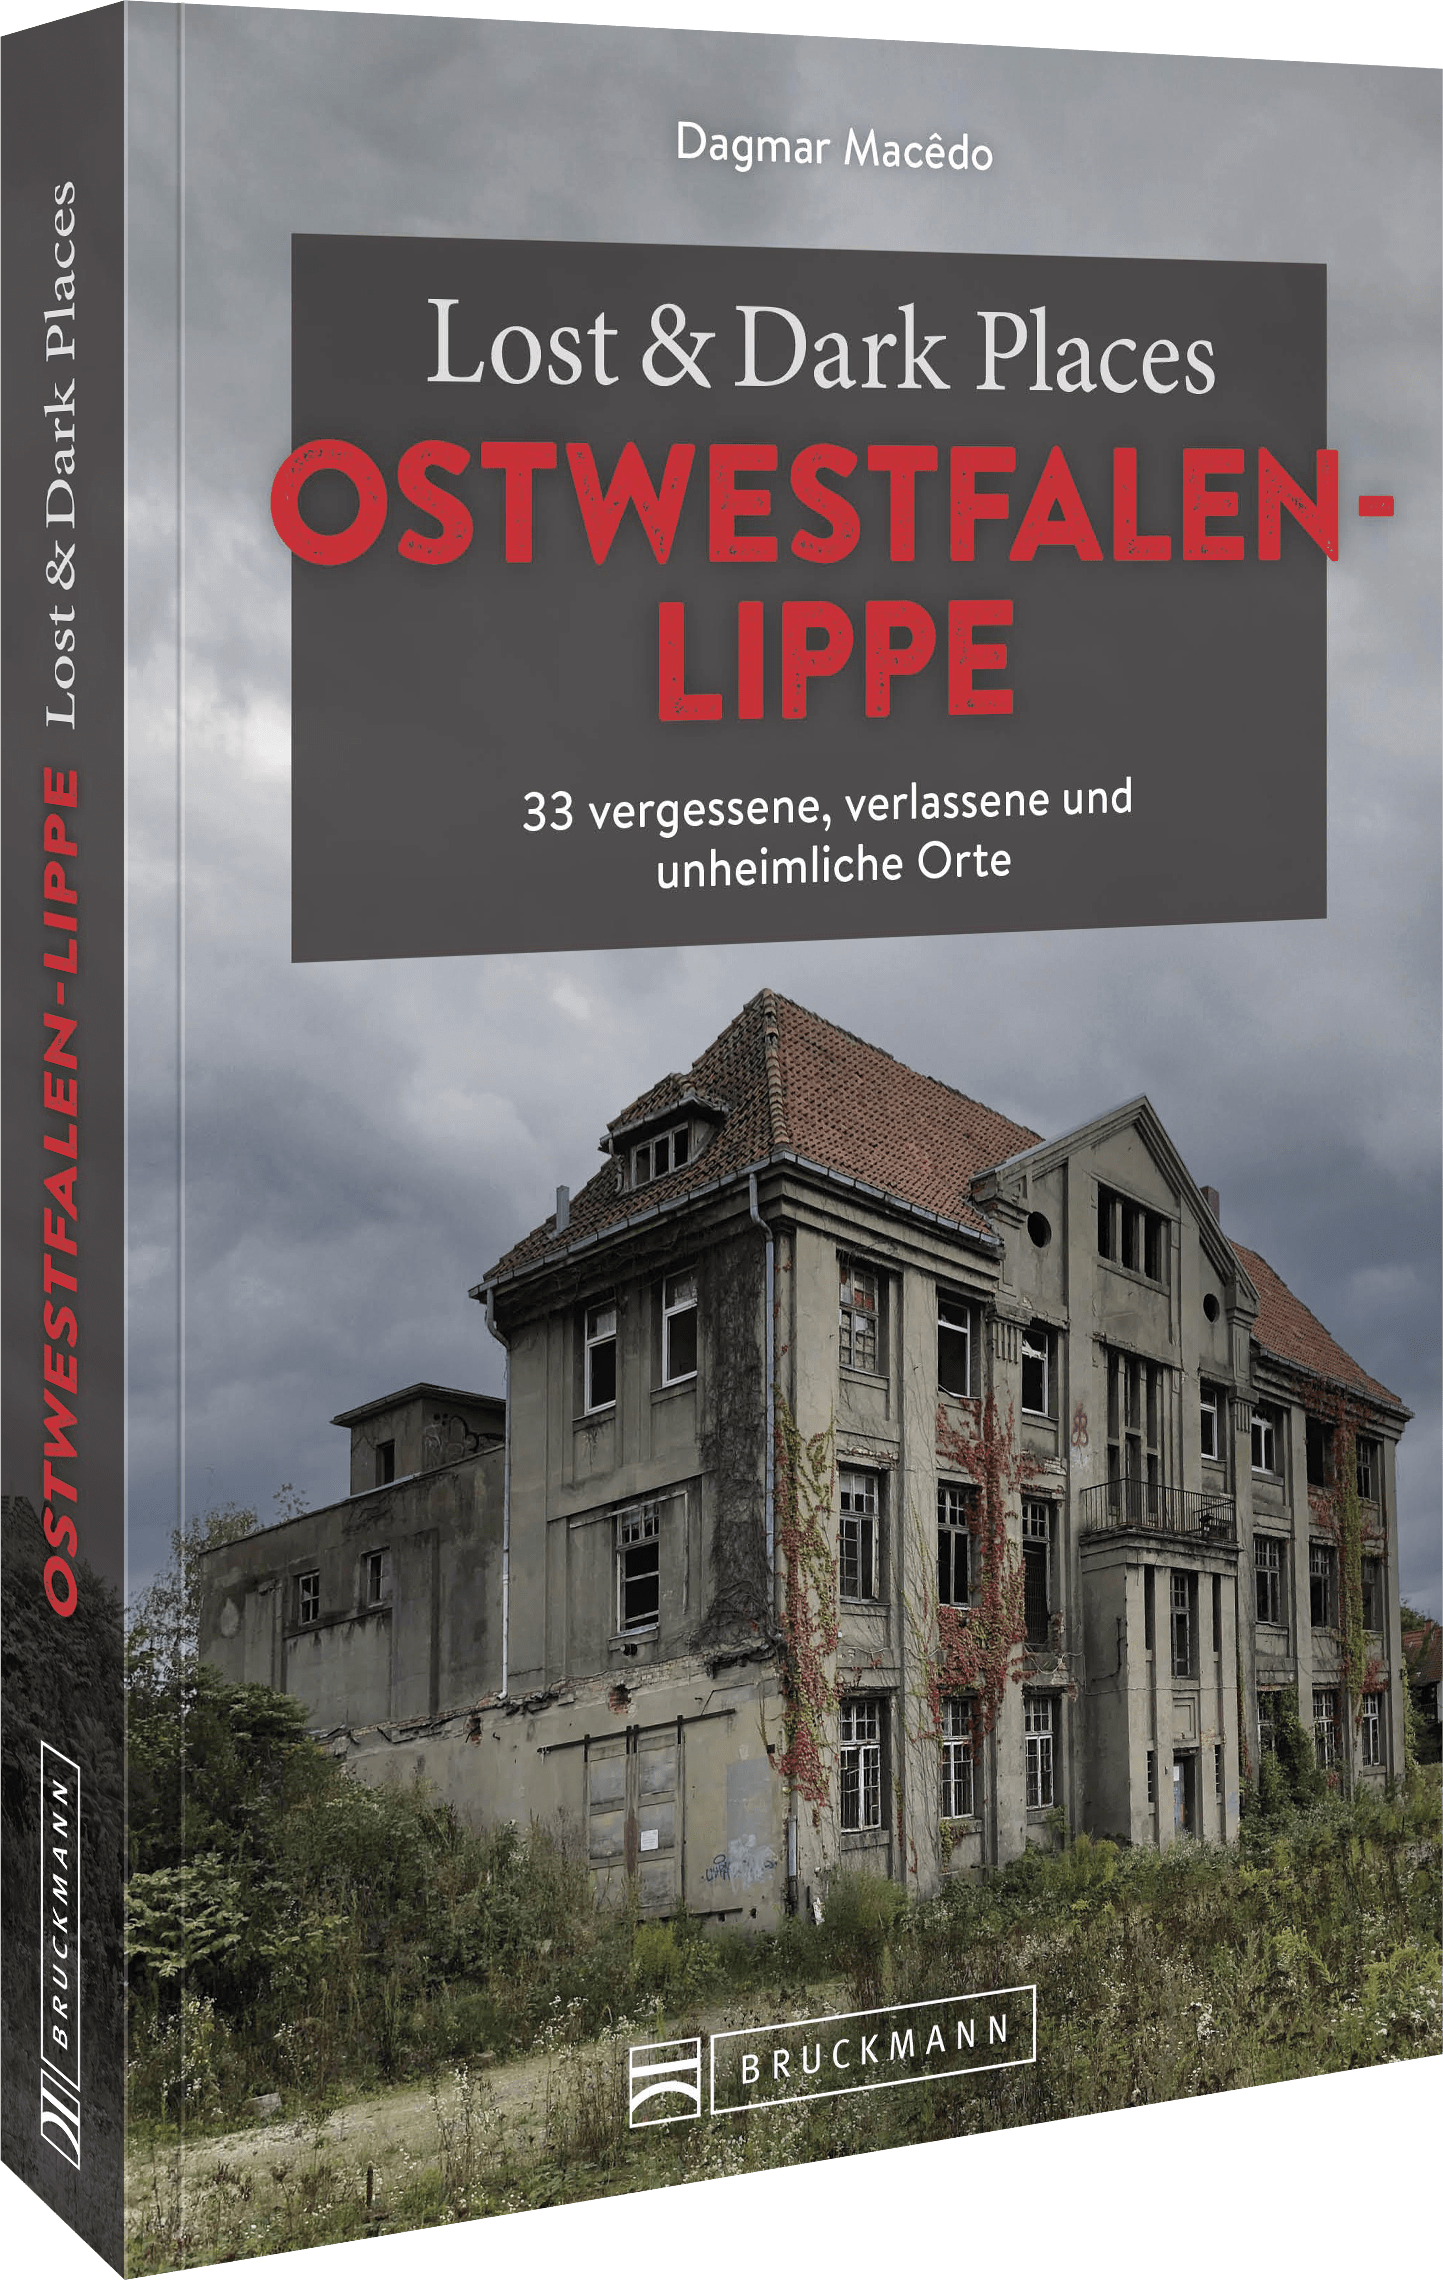 Lost & Dark Places in Ostwestfalen-Lippe